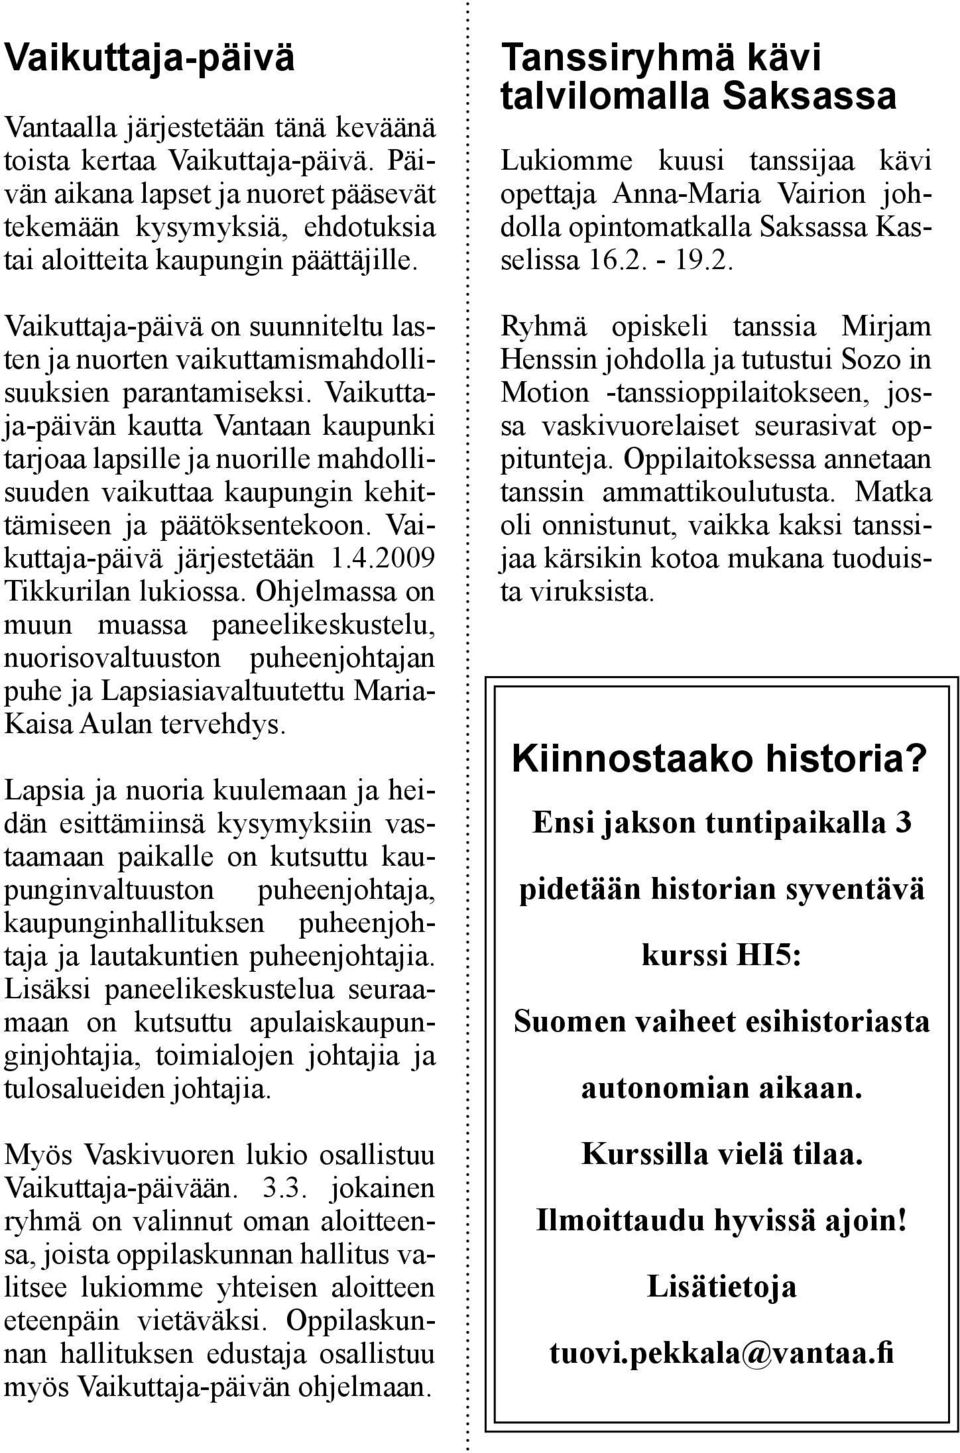 Vaikuttaja-päivän kautta Vantaan kaupunki tarjoaa lapsille ja nuorille mahdollisuuden vaikuttaa kaupungin kehittämiseen ja päätöksentekoon. Vaikuttaja-päivä järjestetään 1.4.2009 Tikkurilan lukiossa.